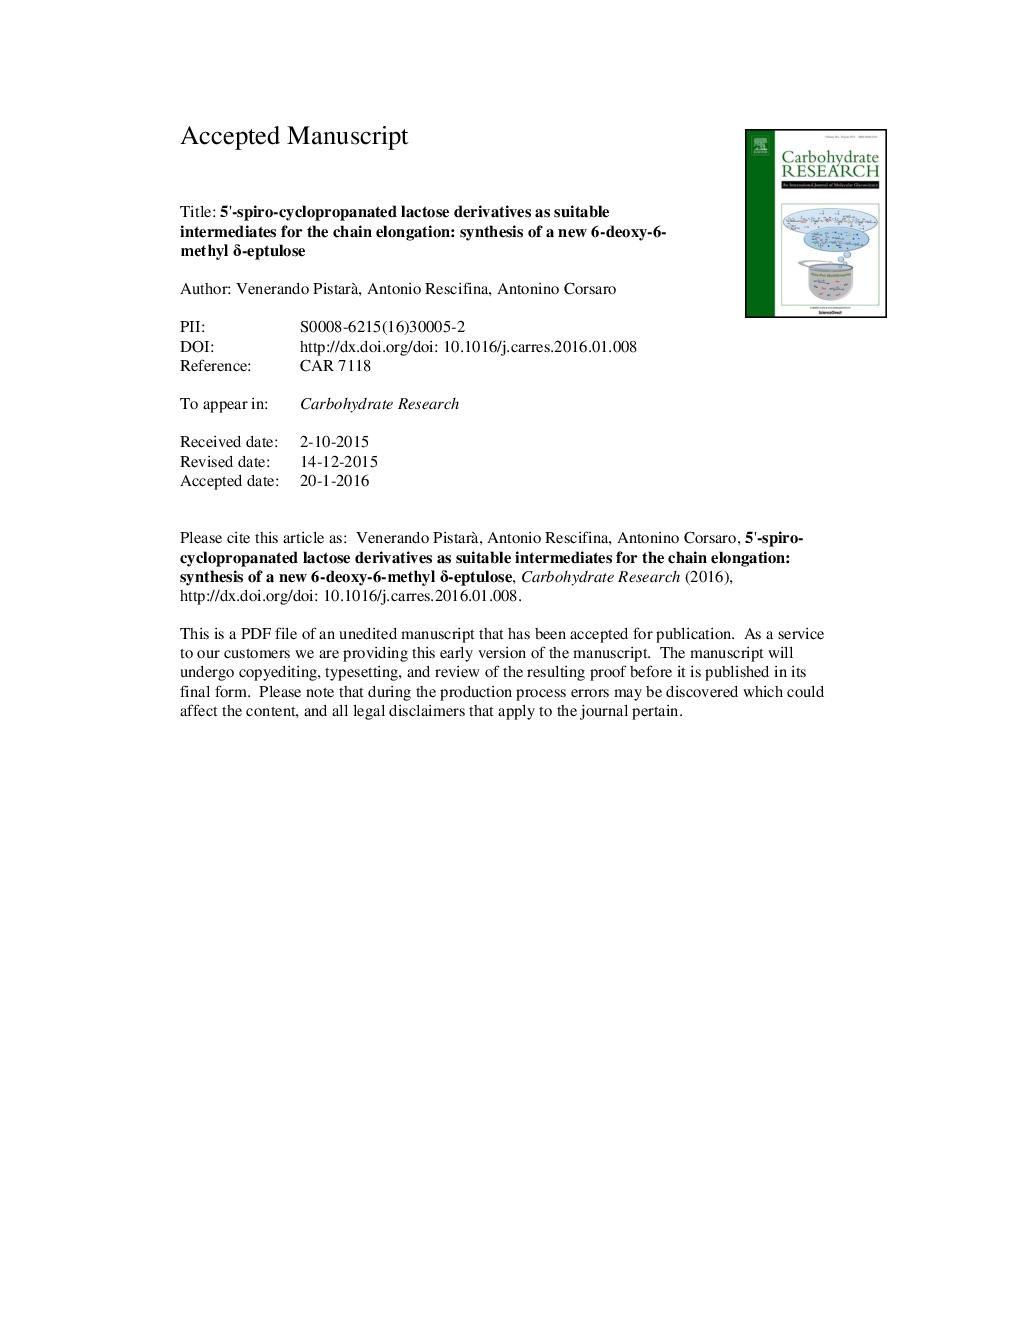 5â²-Spiro-cyclopropanated lactose derivatives as suitable intermediates for the chain elongation: synthesis of a new 6-deoxy-6-methyl Î´-eptulose